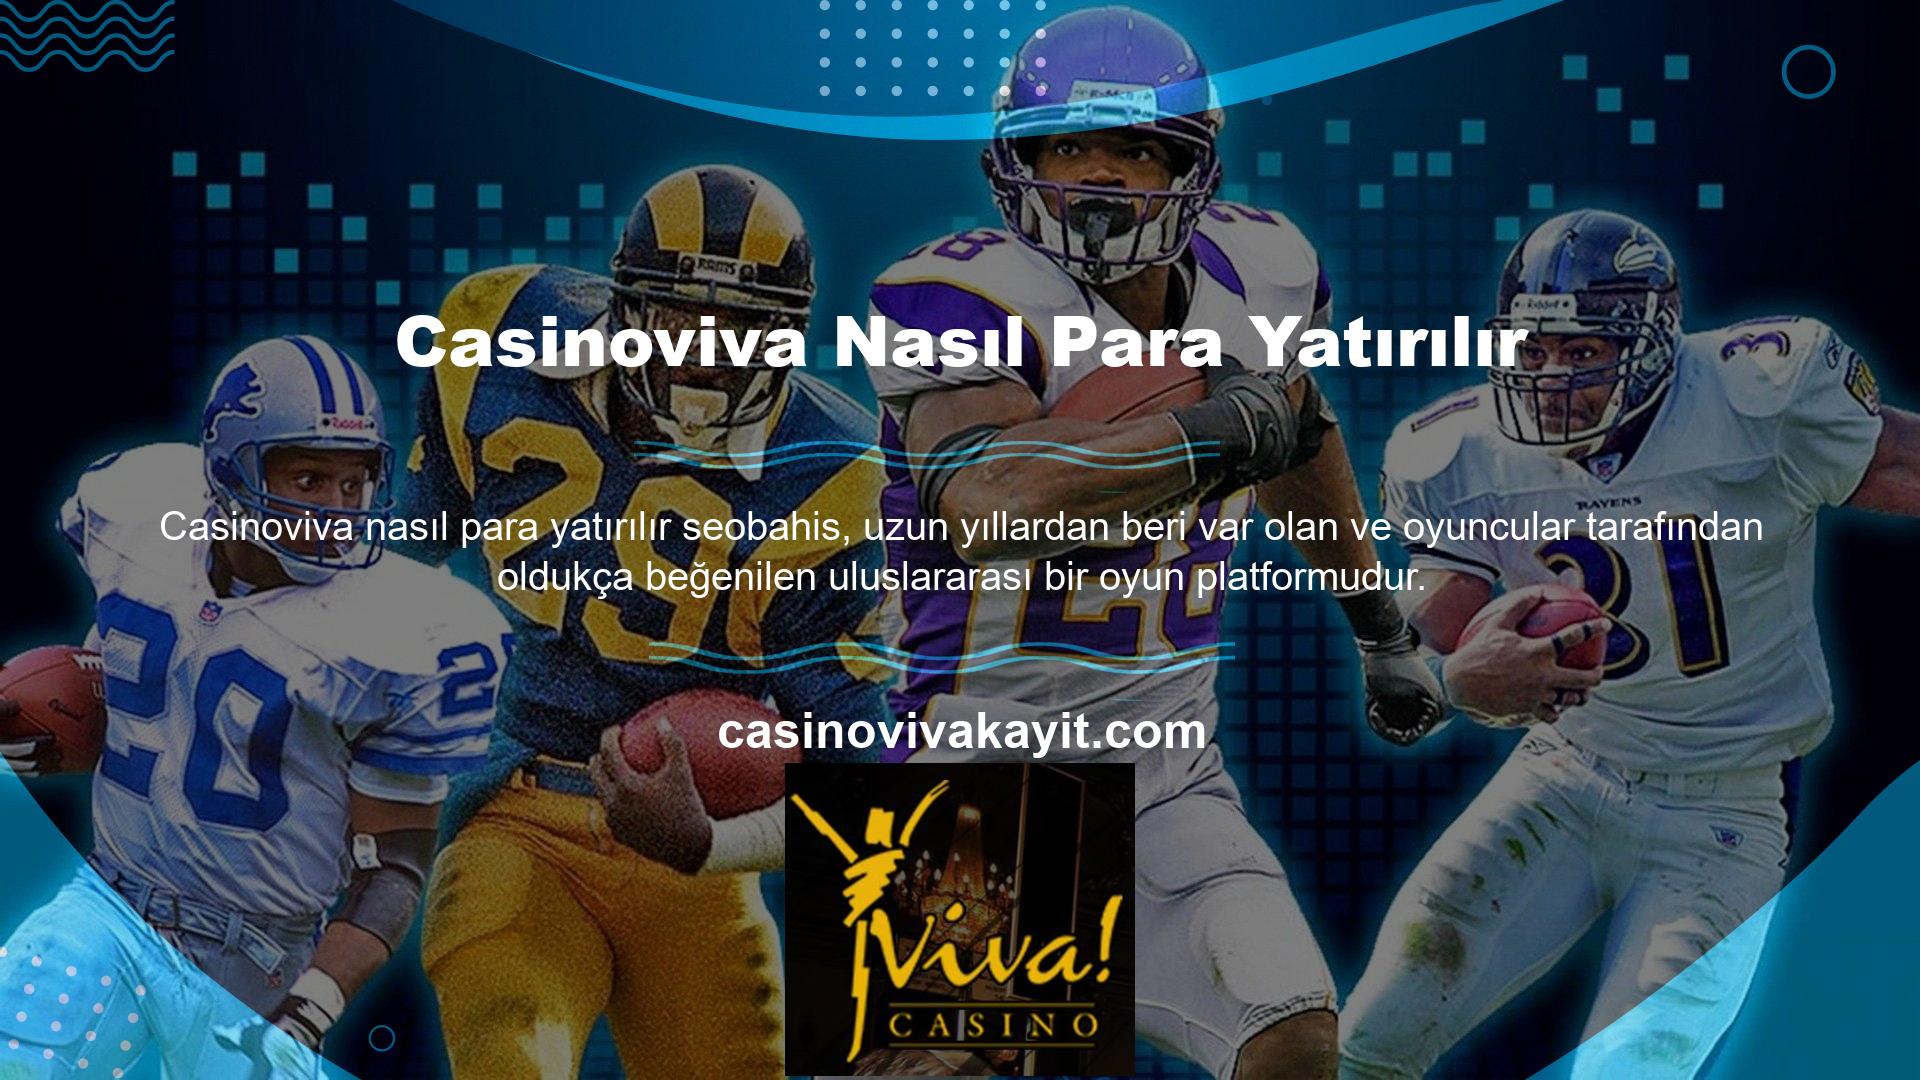 Uluslararası sertifikalara sahip casino sitelerinin kullanıcıları Casinoviva Mevduat'a güvenle para yatırabilirler